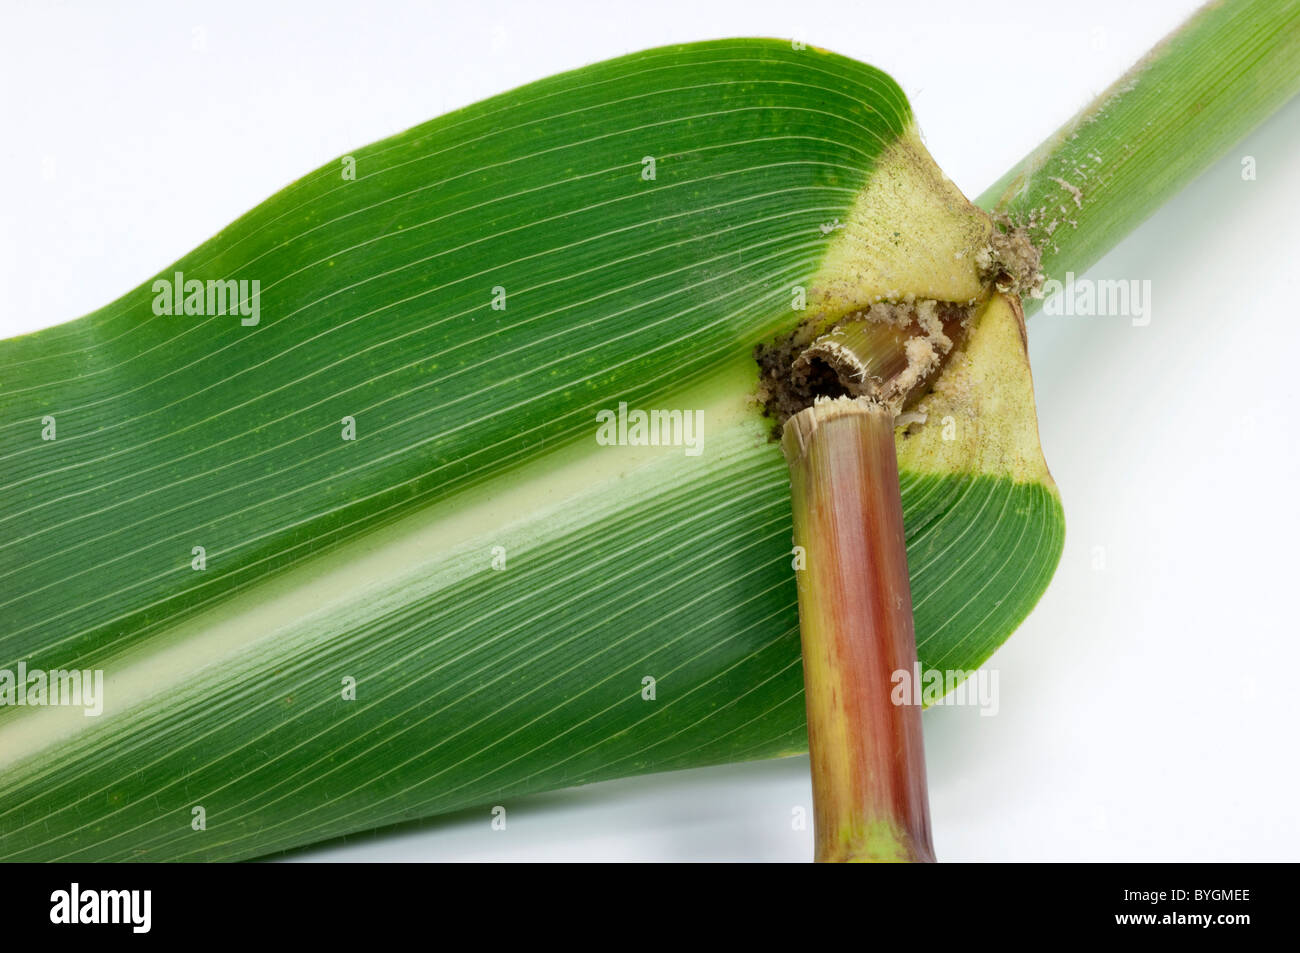 Le maïs, le maïs (Zea mays). Détail de l'essuyage endommagés par la pyrale du maïs (Ostrinia nubilalis). Banque D'Images